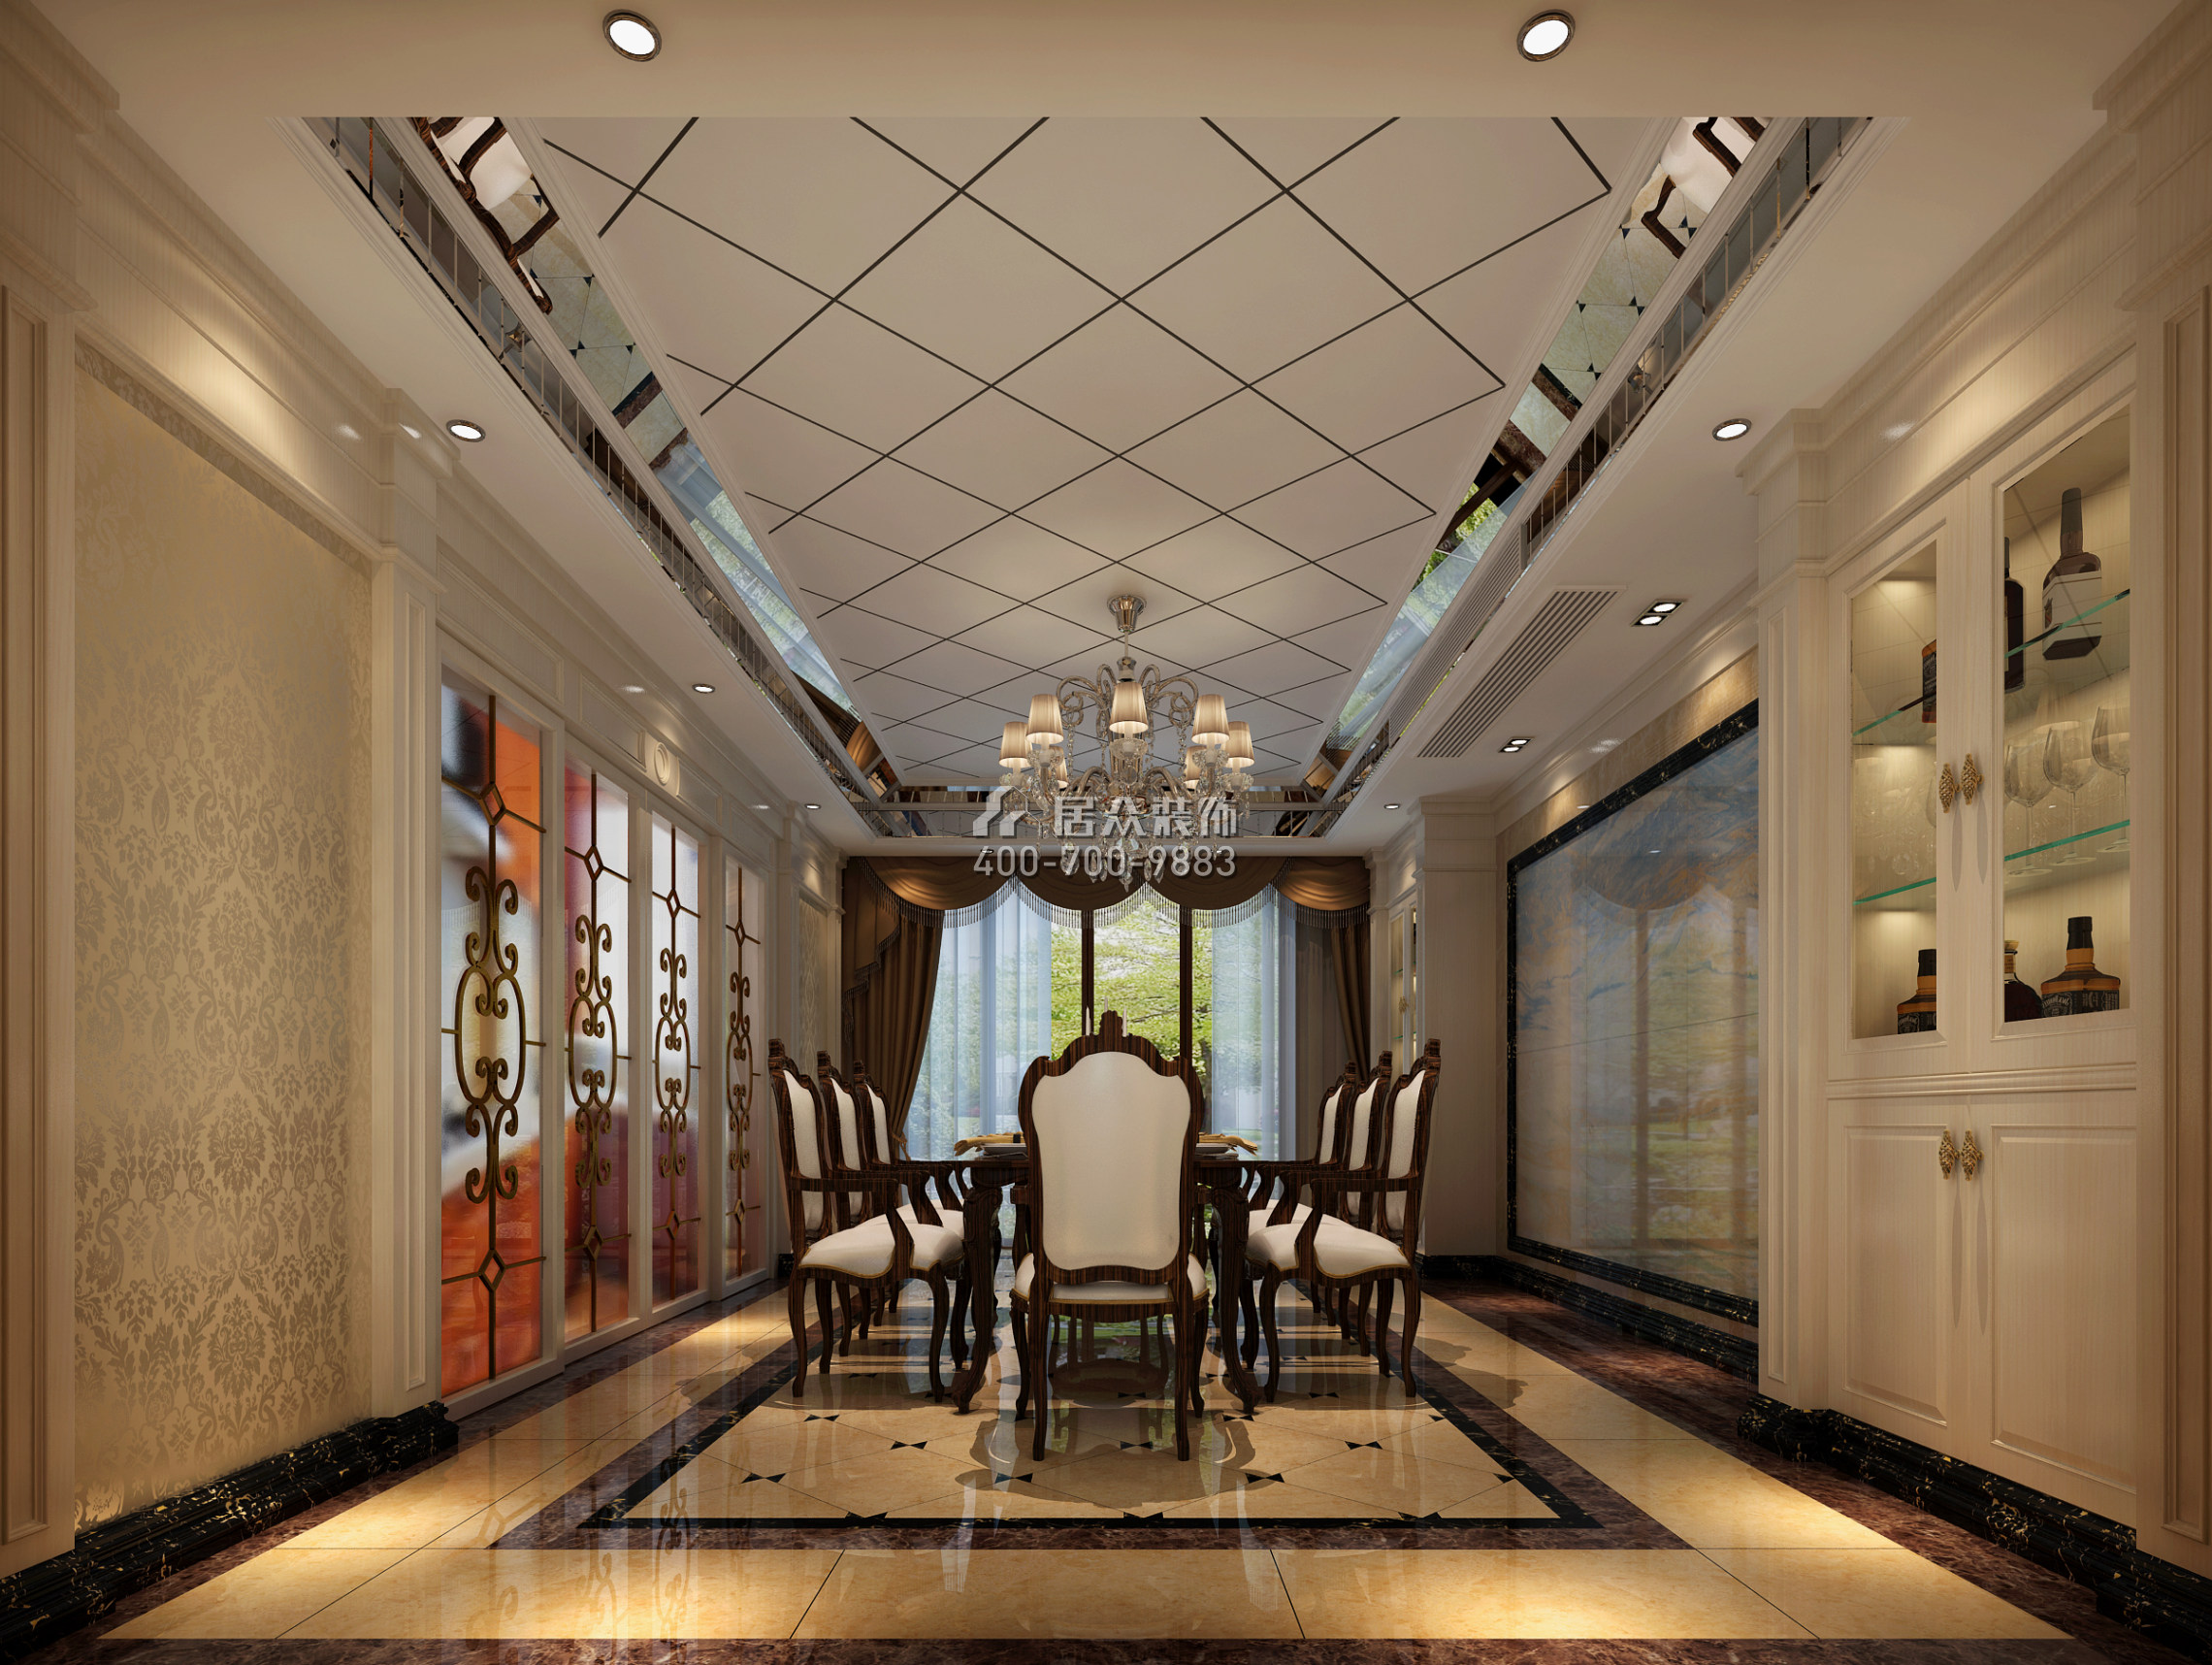 容桂碧桂園580平方米歐式風格復式戶型餐廳裝修效果圖